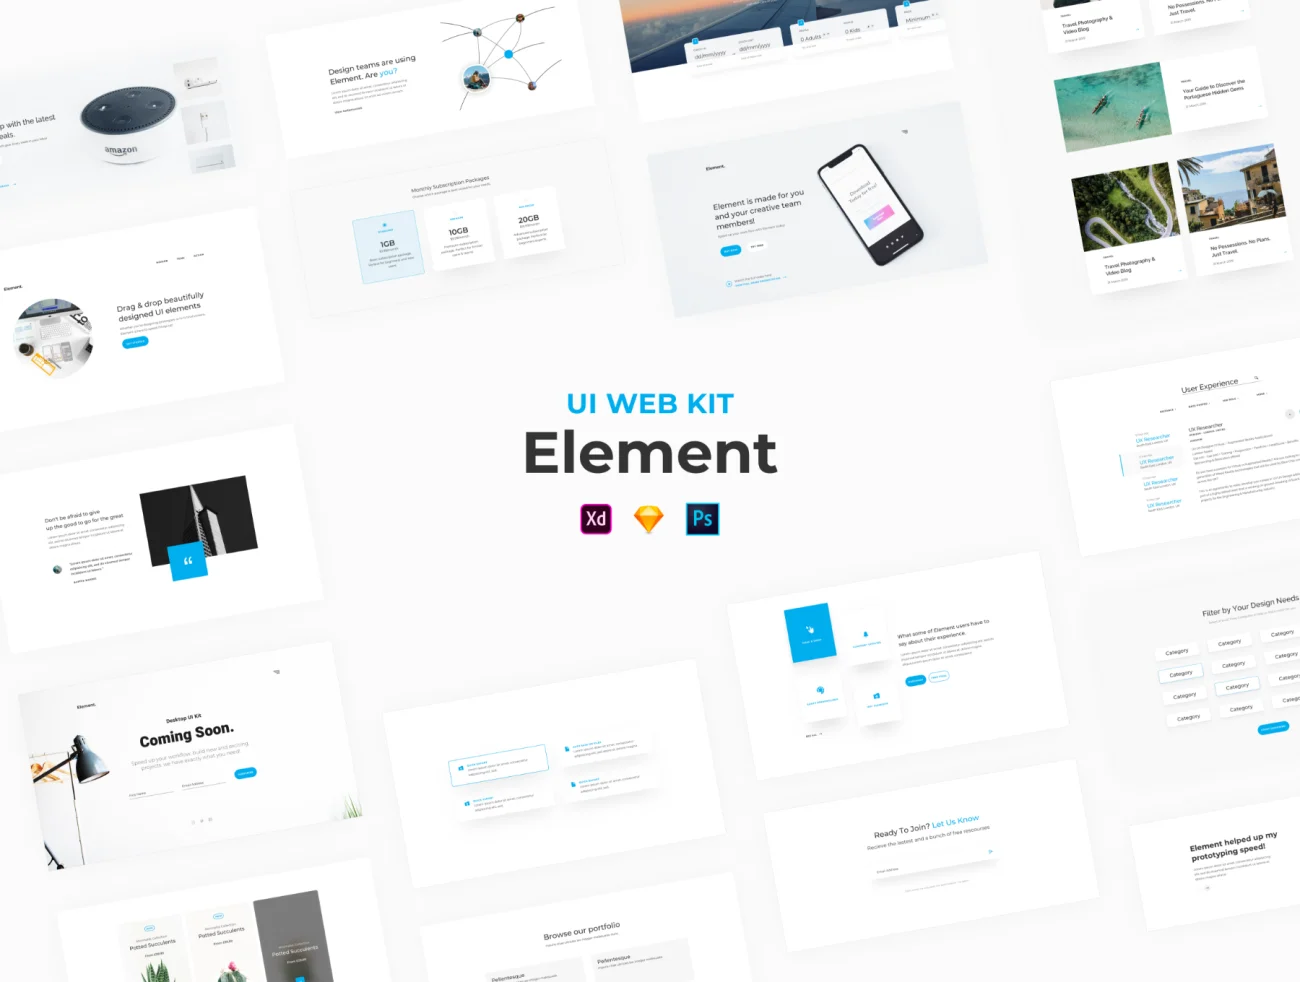 Element - UI Web Kit 网站模块化设计元素套件-UI/UX-到位啦UI